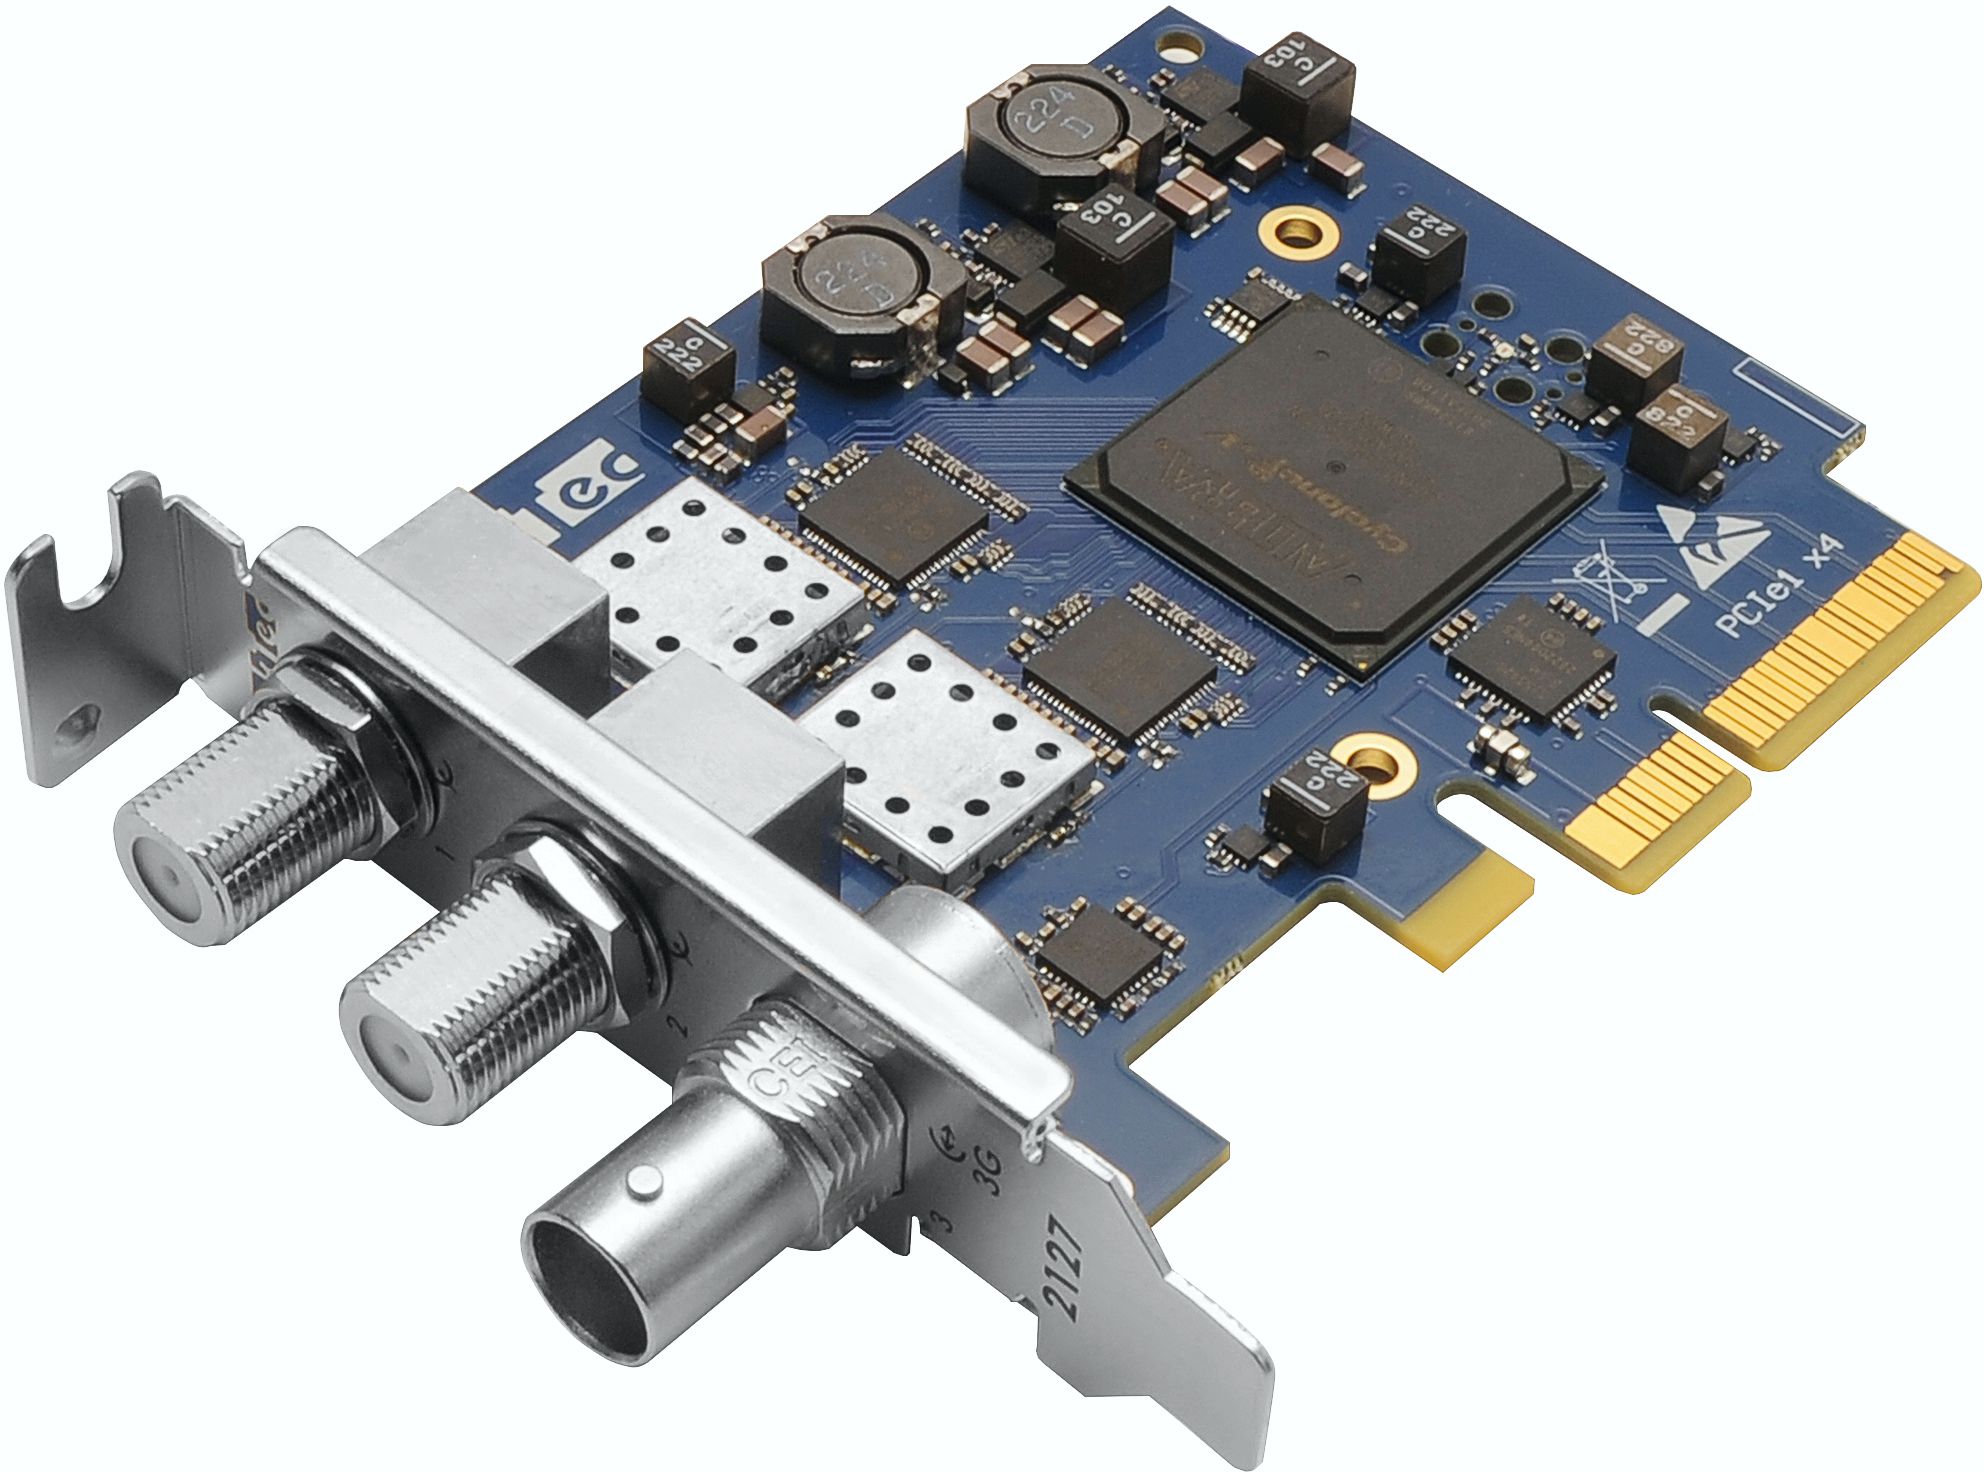 DTA-2127 Quad DVB-S2X Receiver with 3G-SDI/ASI Output for PCIe